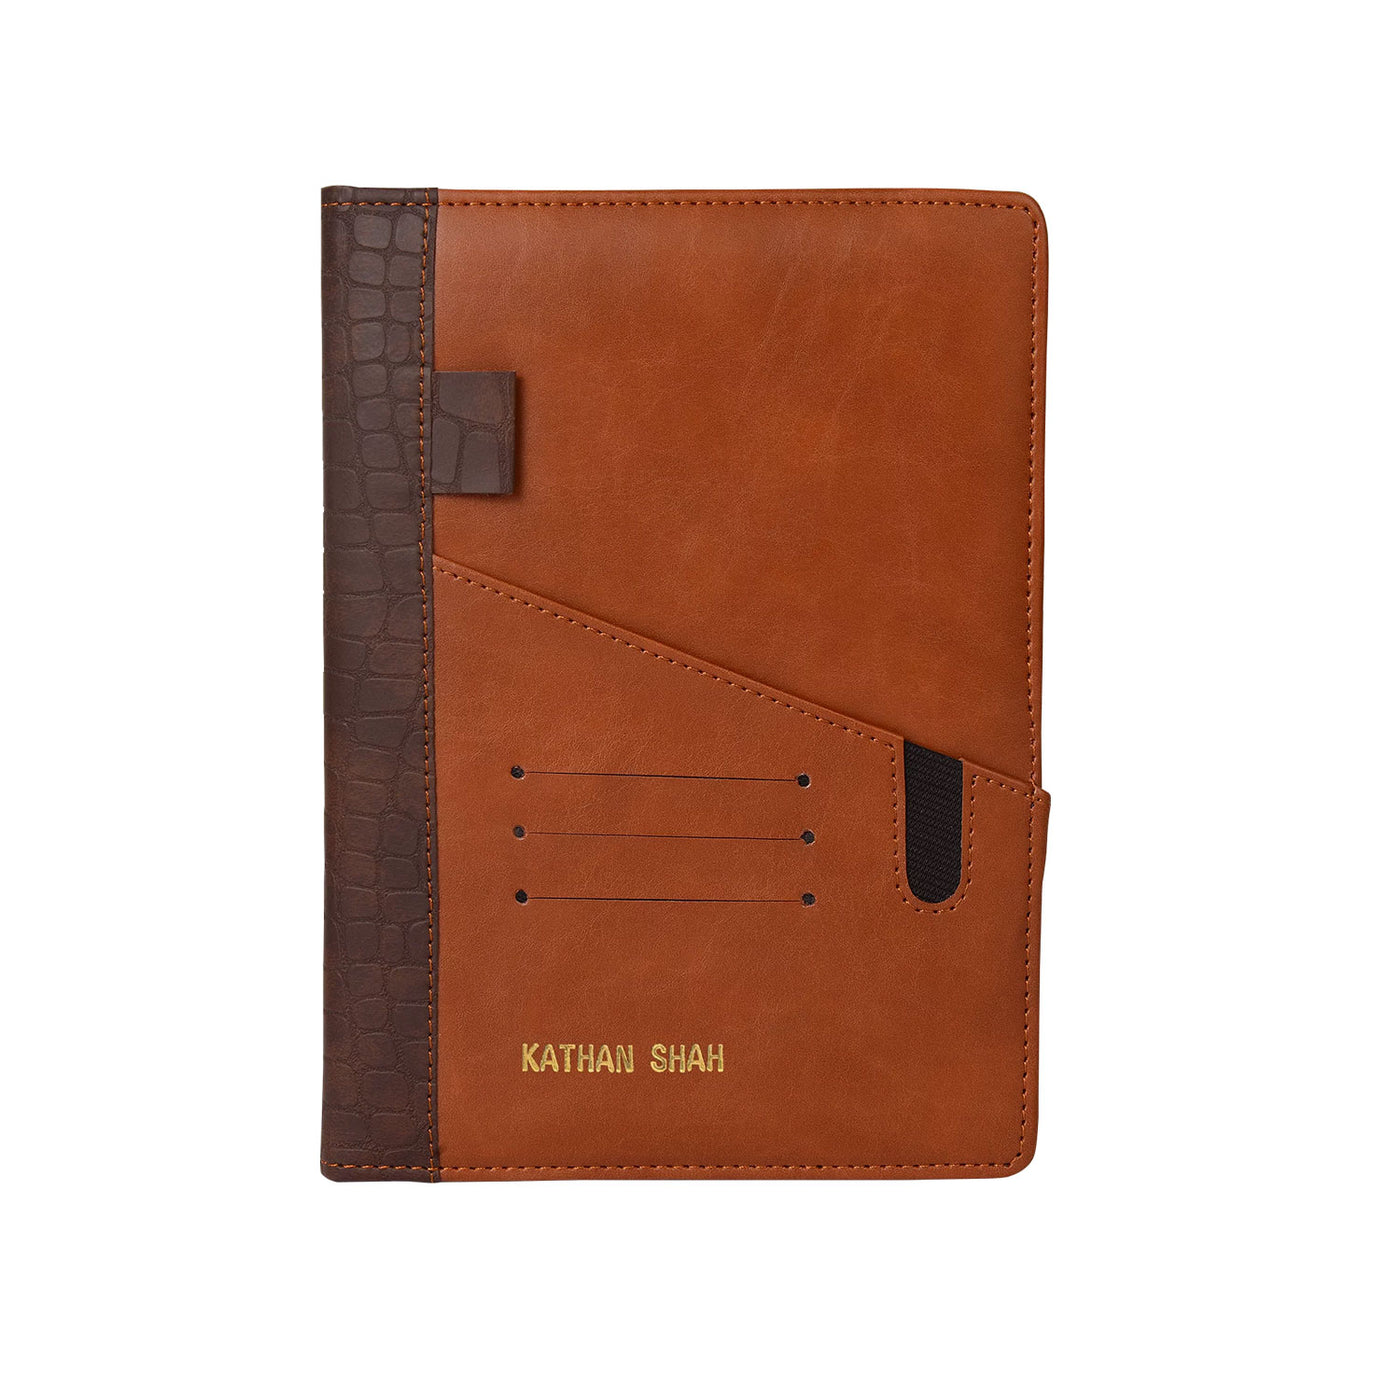 Scholar Apollo Tan Notebook - A5 Ruled 3